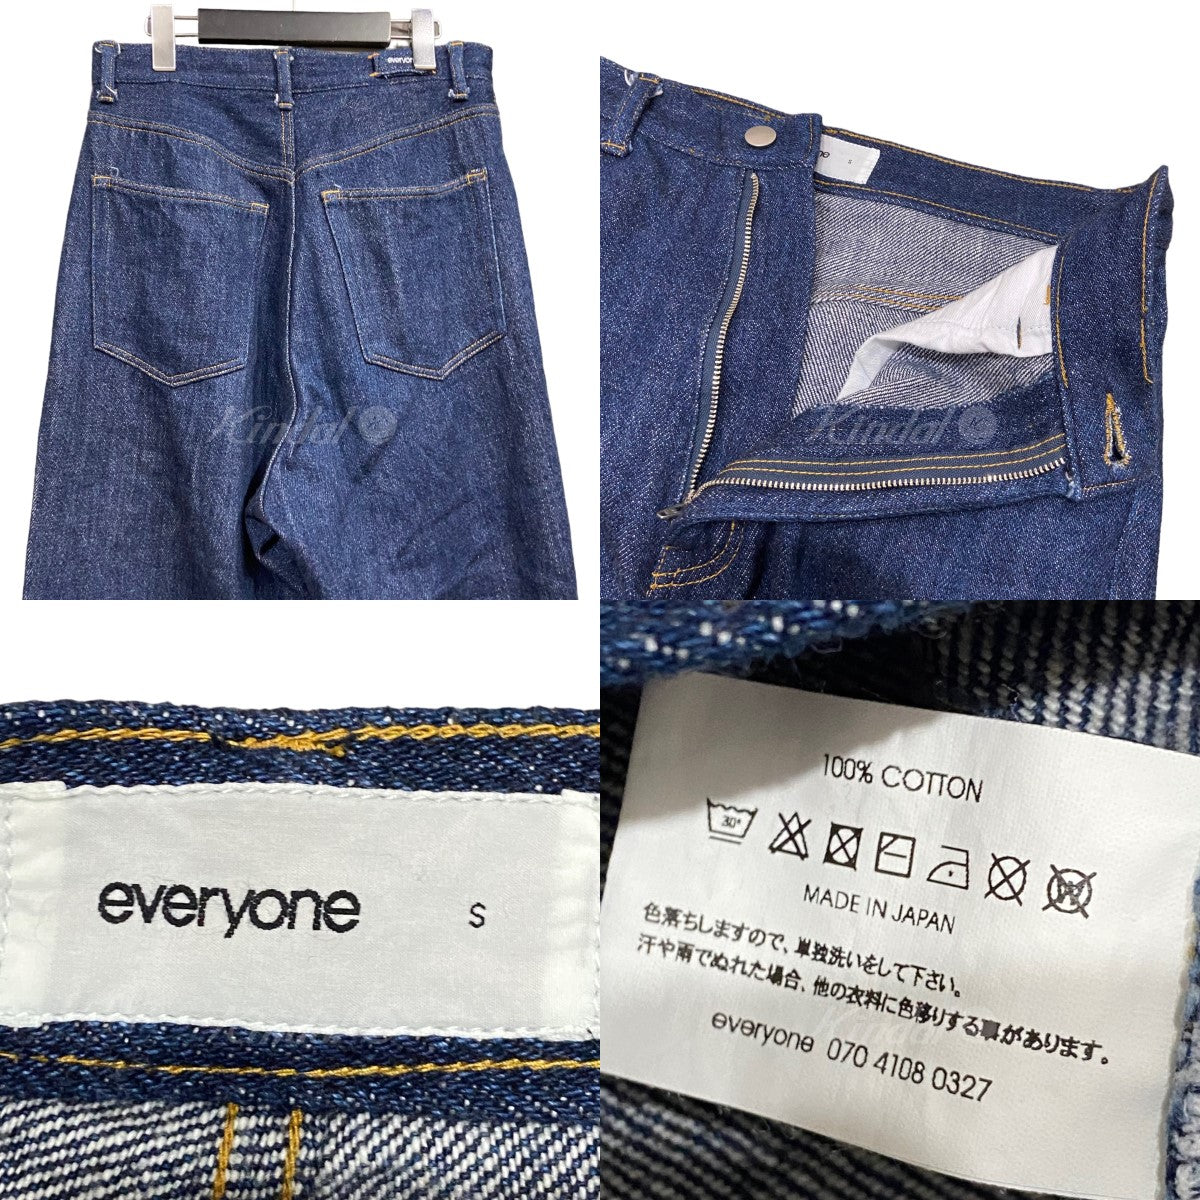 新入荷 pants denim soft everyone XL デニム エブリワン パンツ - www ...